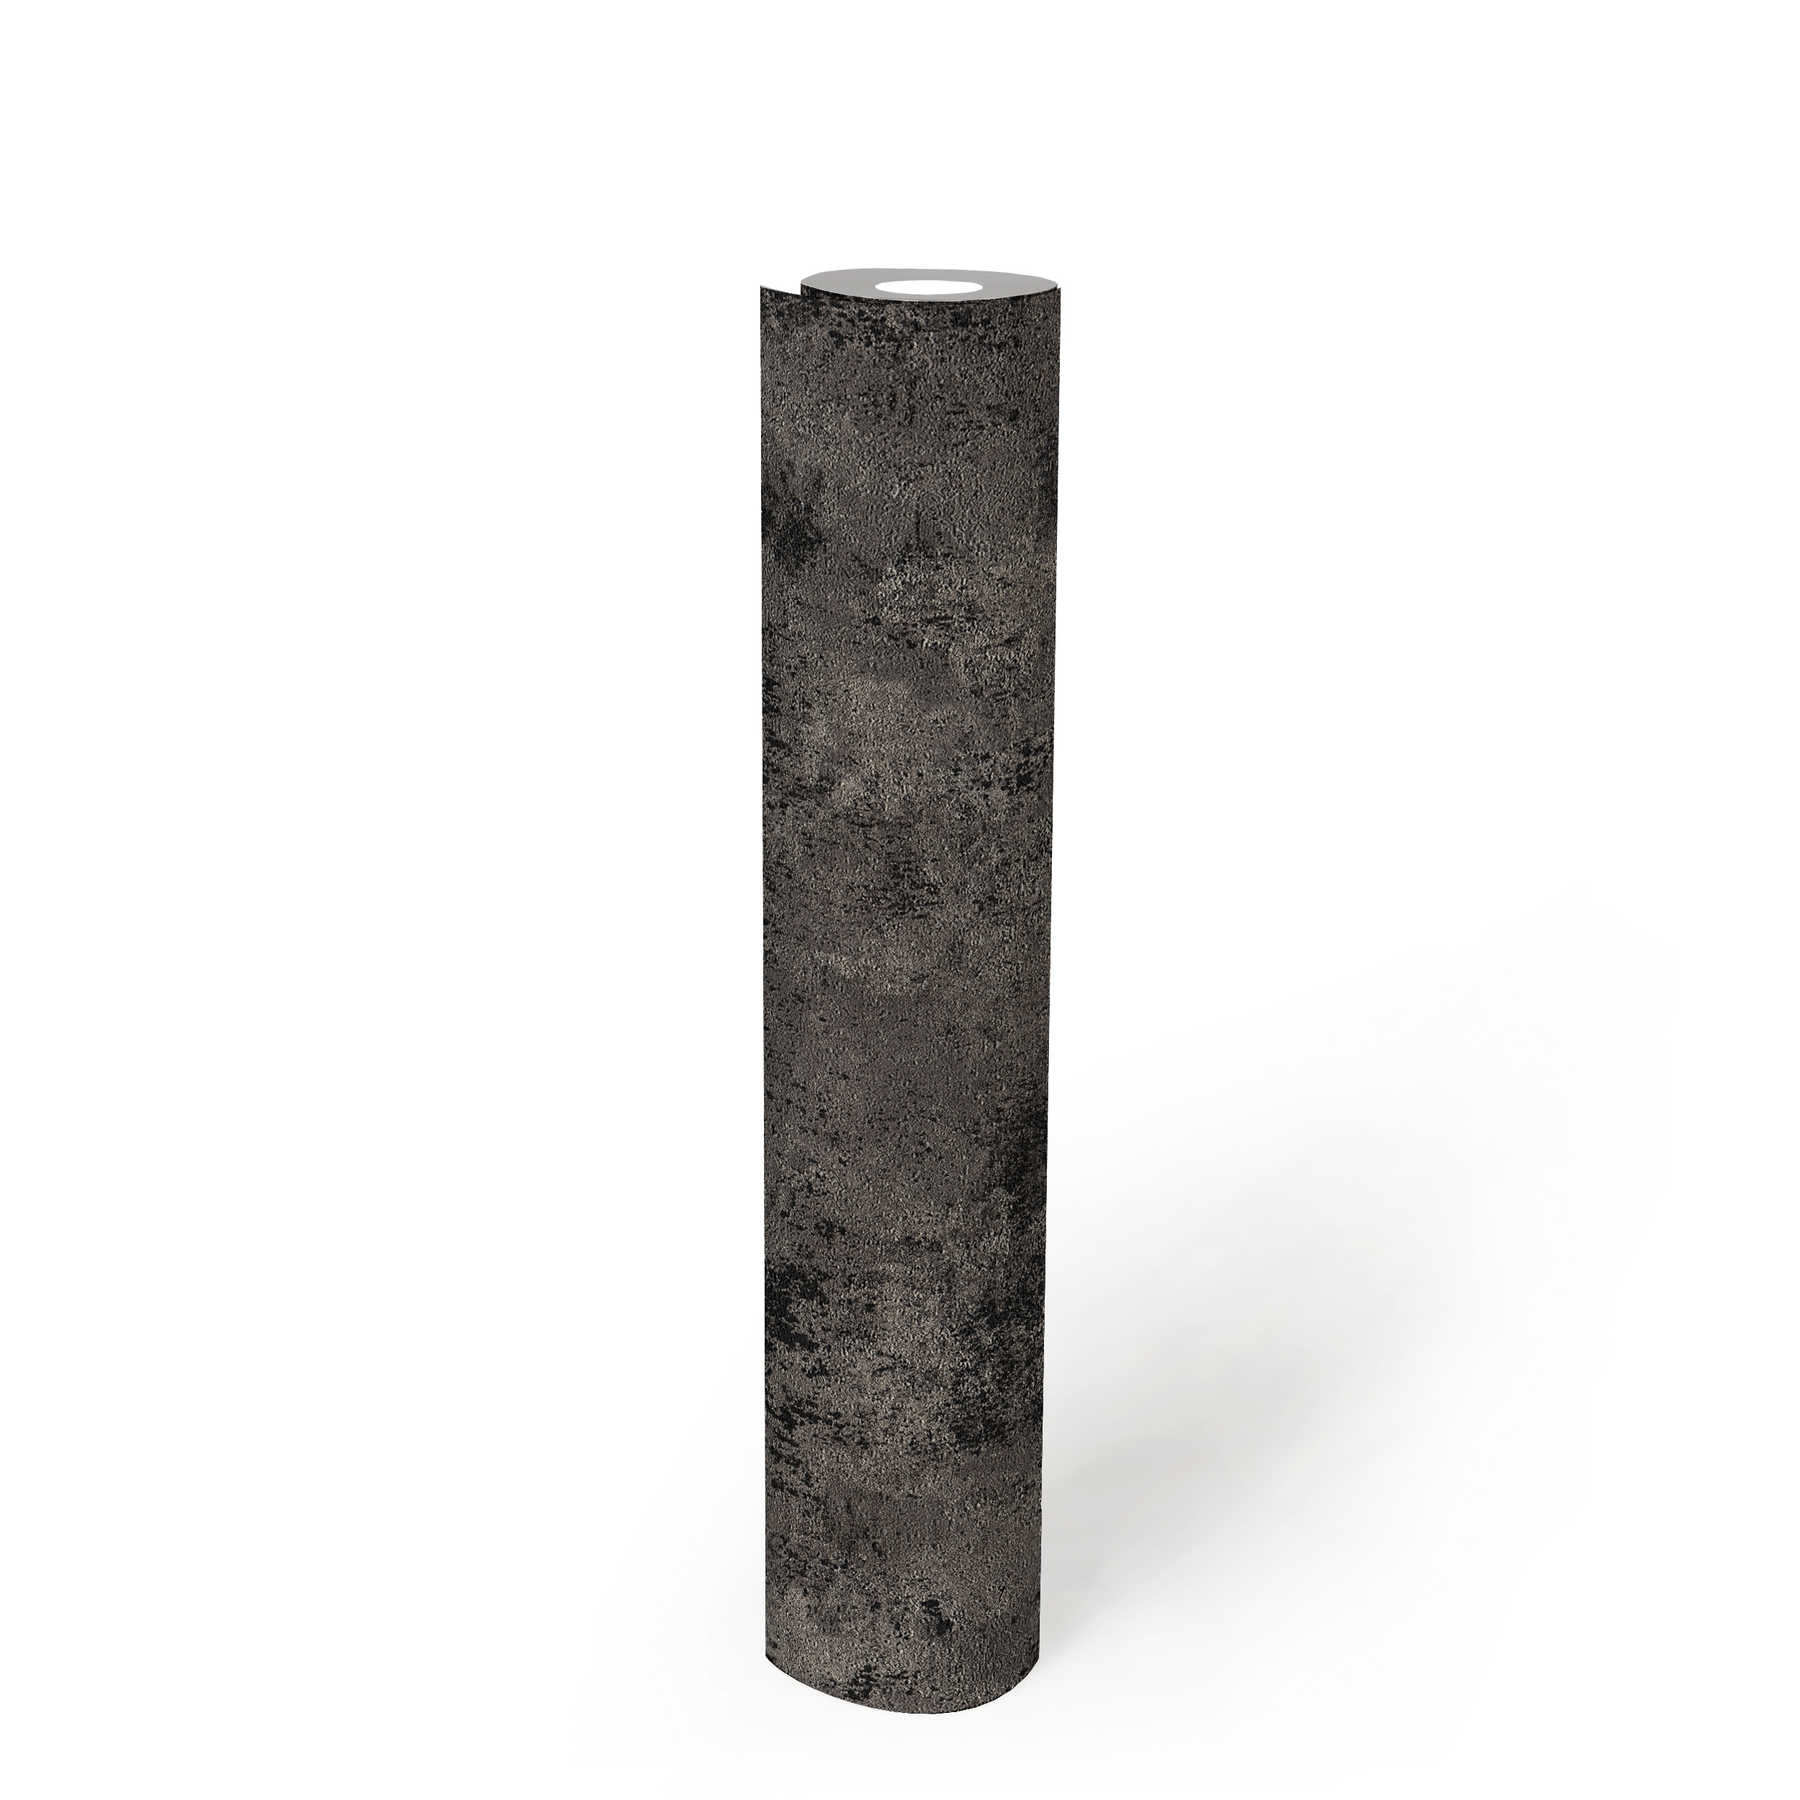             Papier peint intissé foncé structure rustique - noir, argenté
        